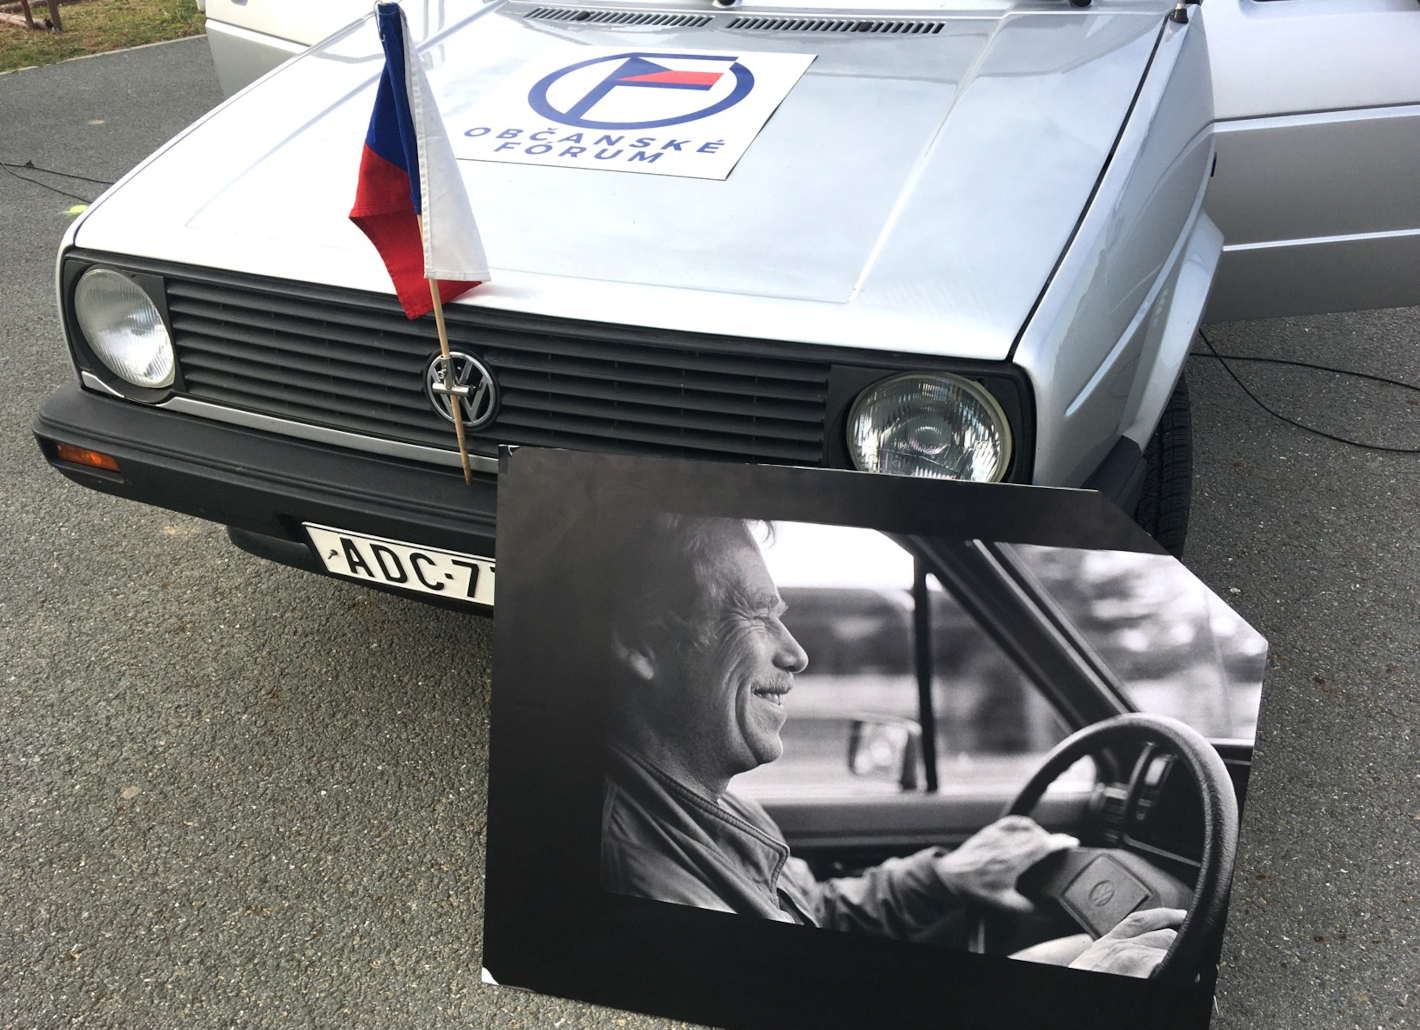 Auto VW Golf, na kapotě nálepka Občanské fórum, o přední sklo auta je opřená velká fotografie, na které je Václav Havel řídící toto auto.